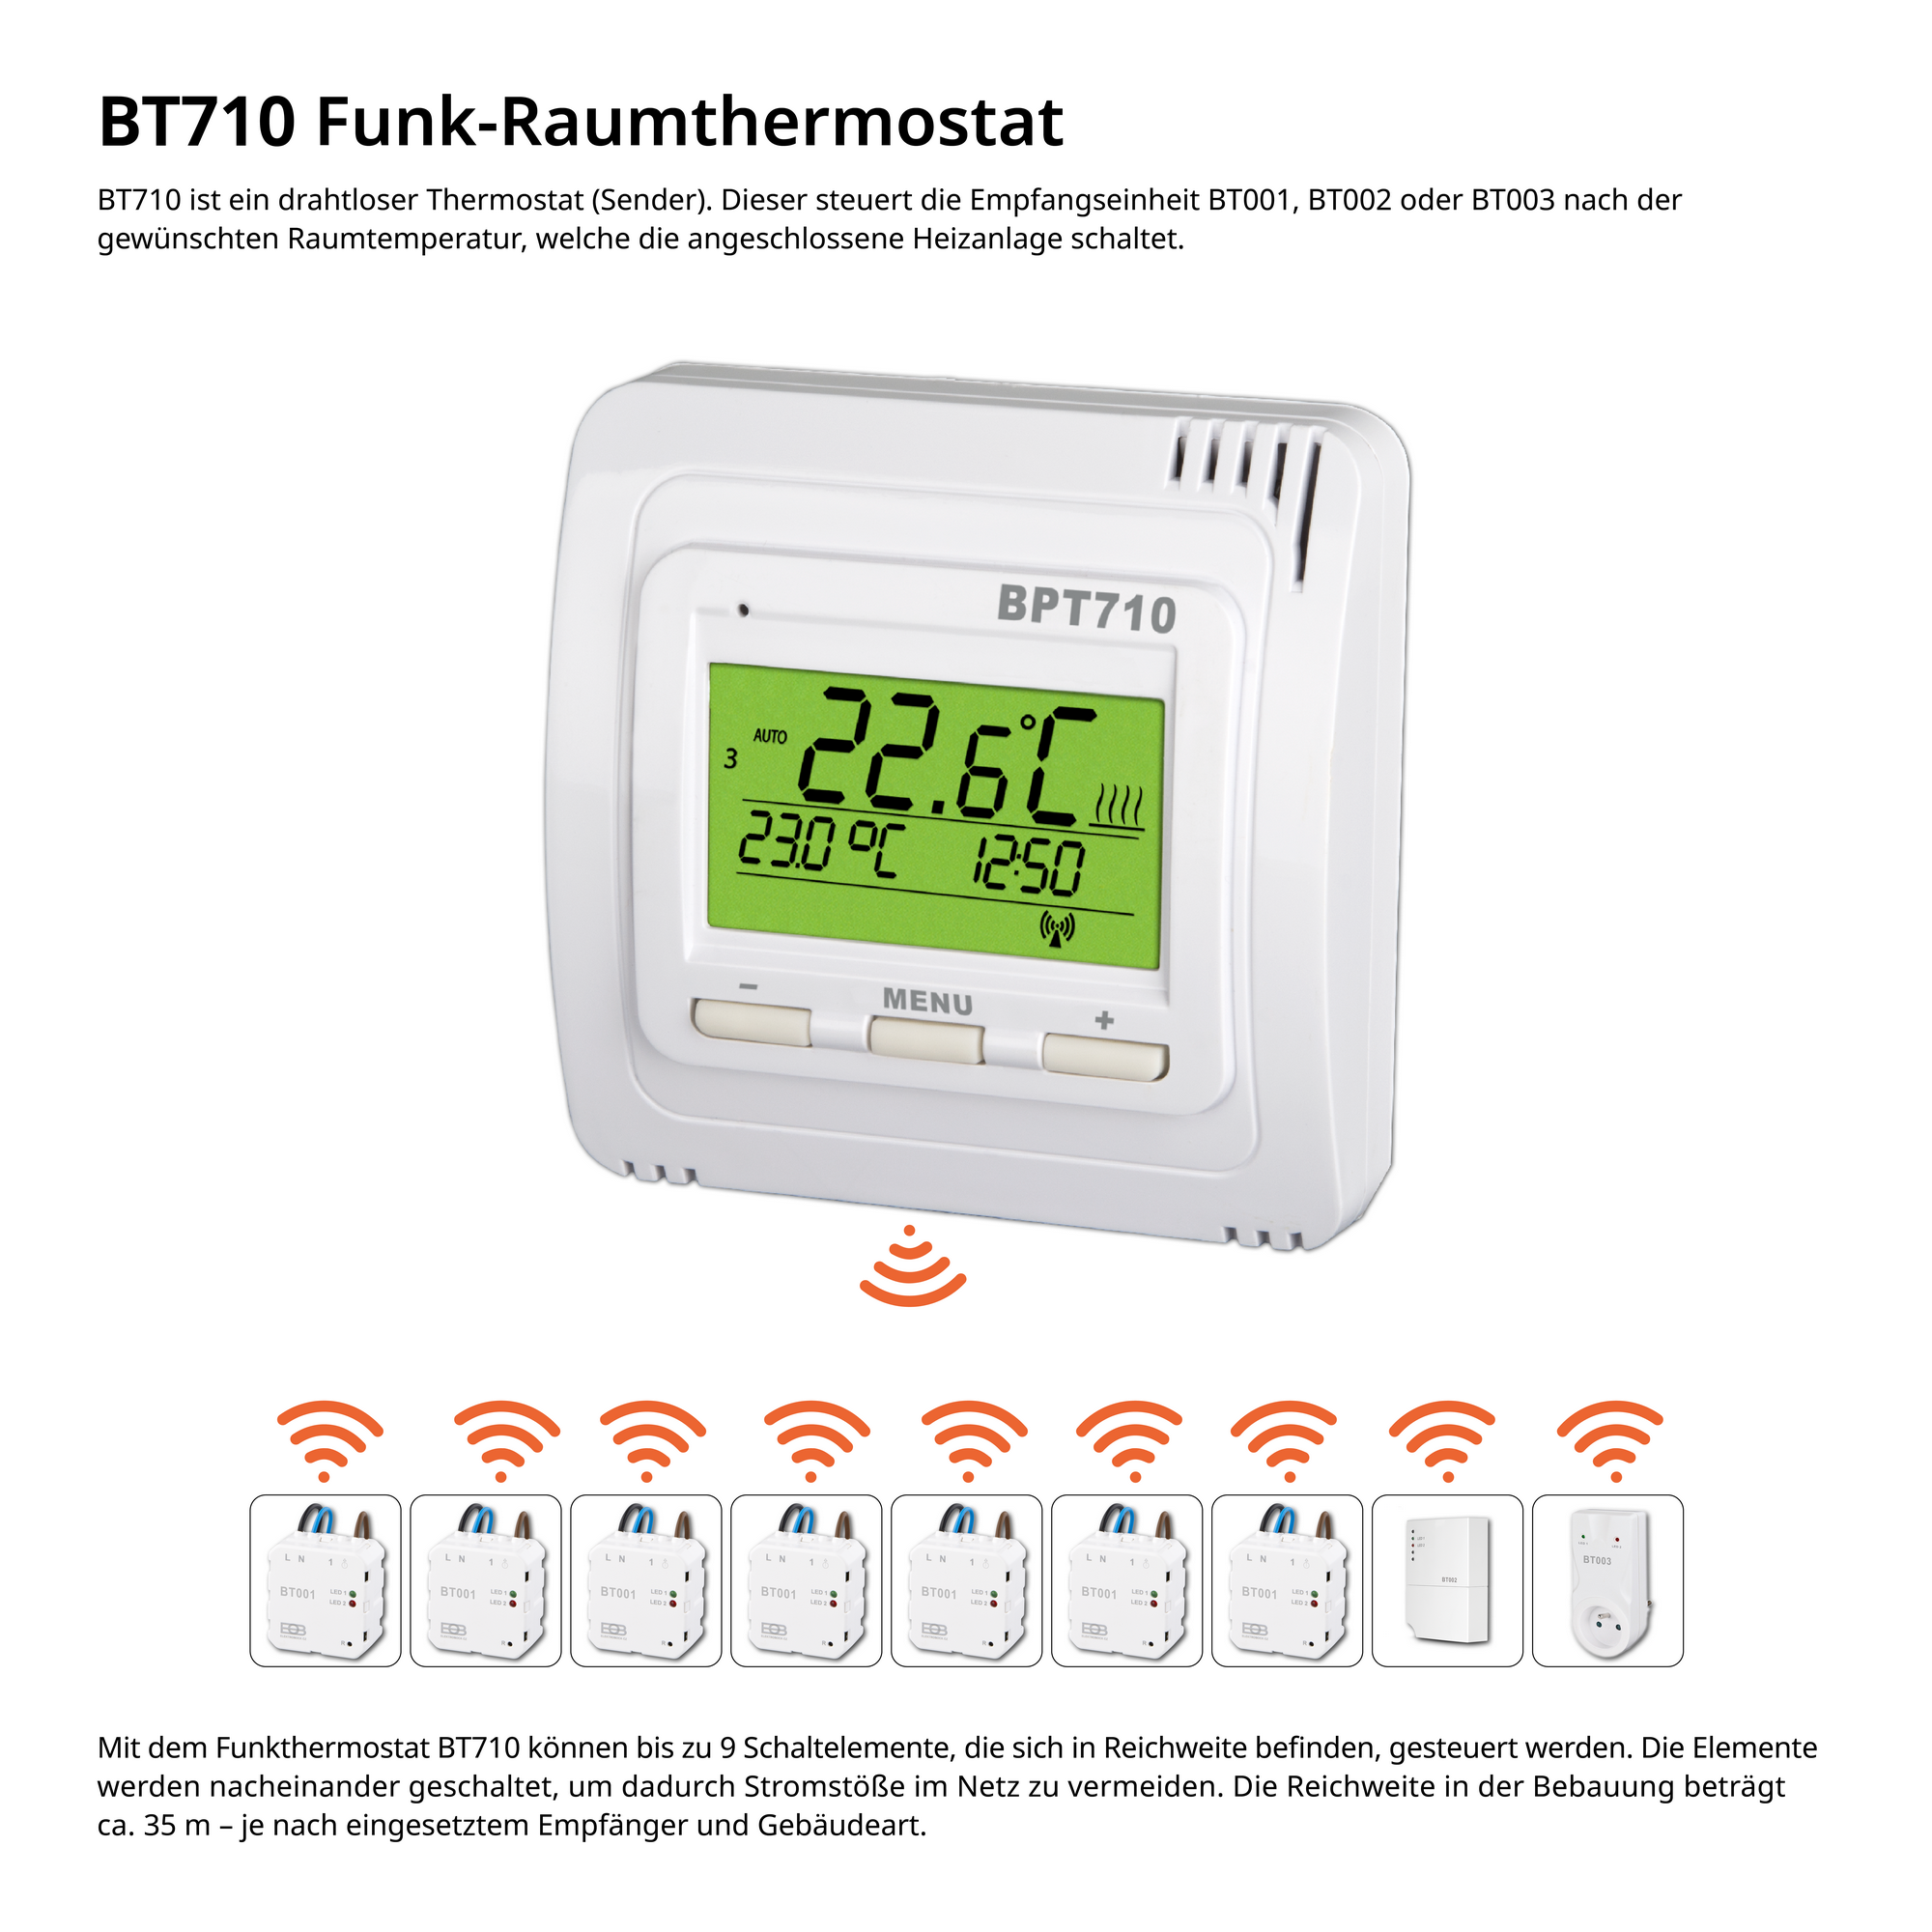 Funk-Thermostat-Empfänger für elektrische Heizkörper 'BT003' + product picture